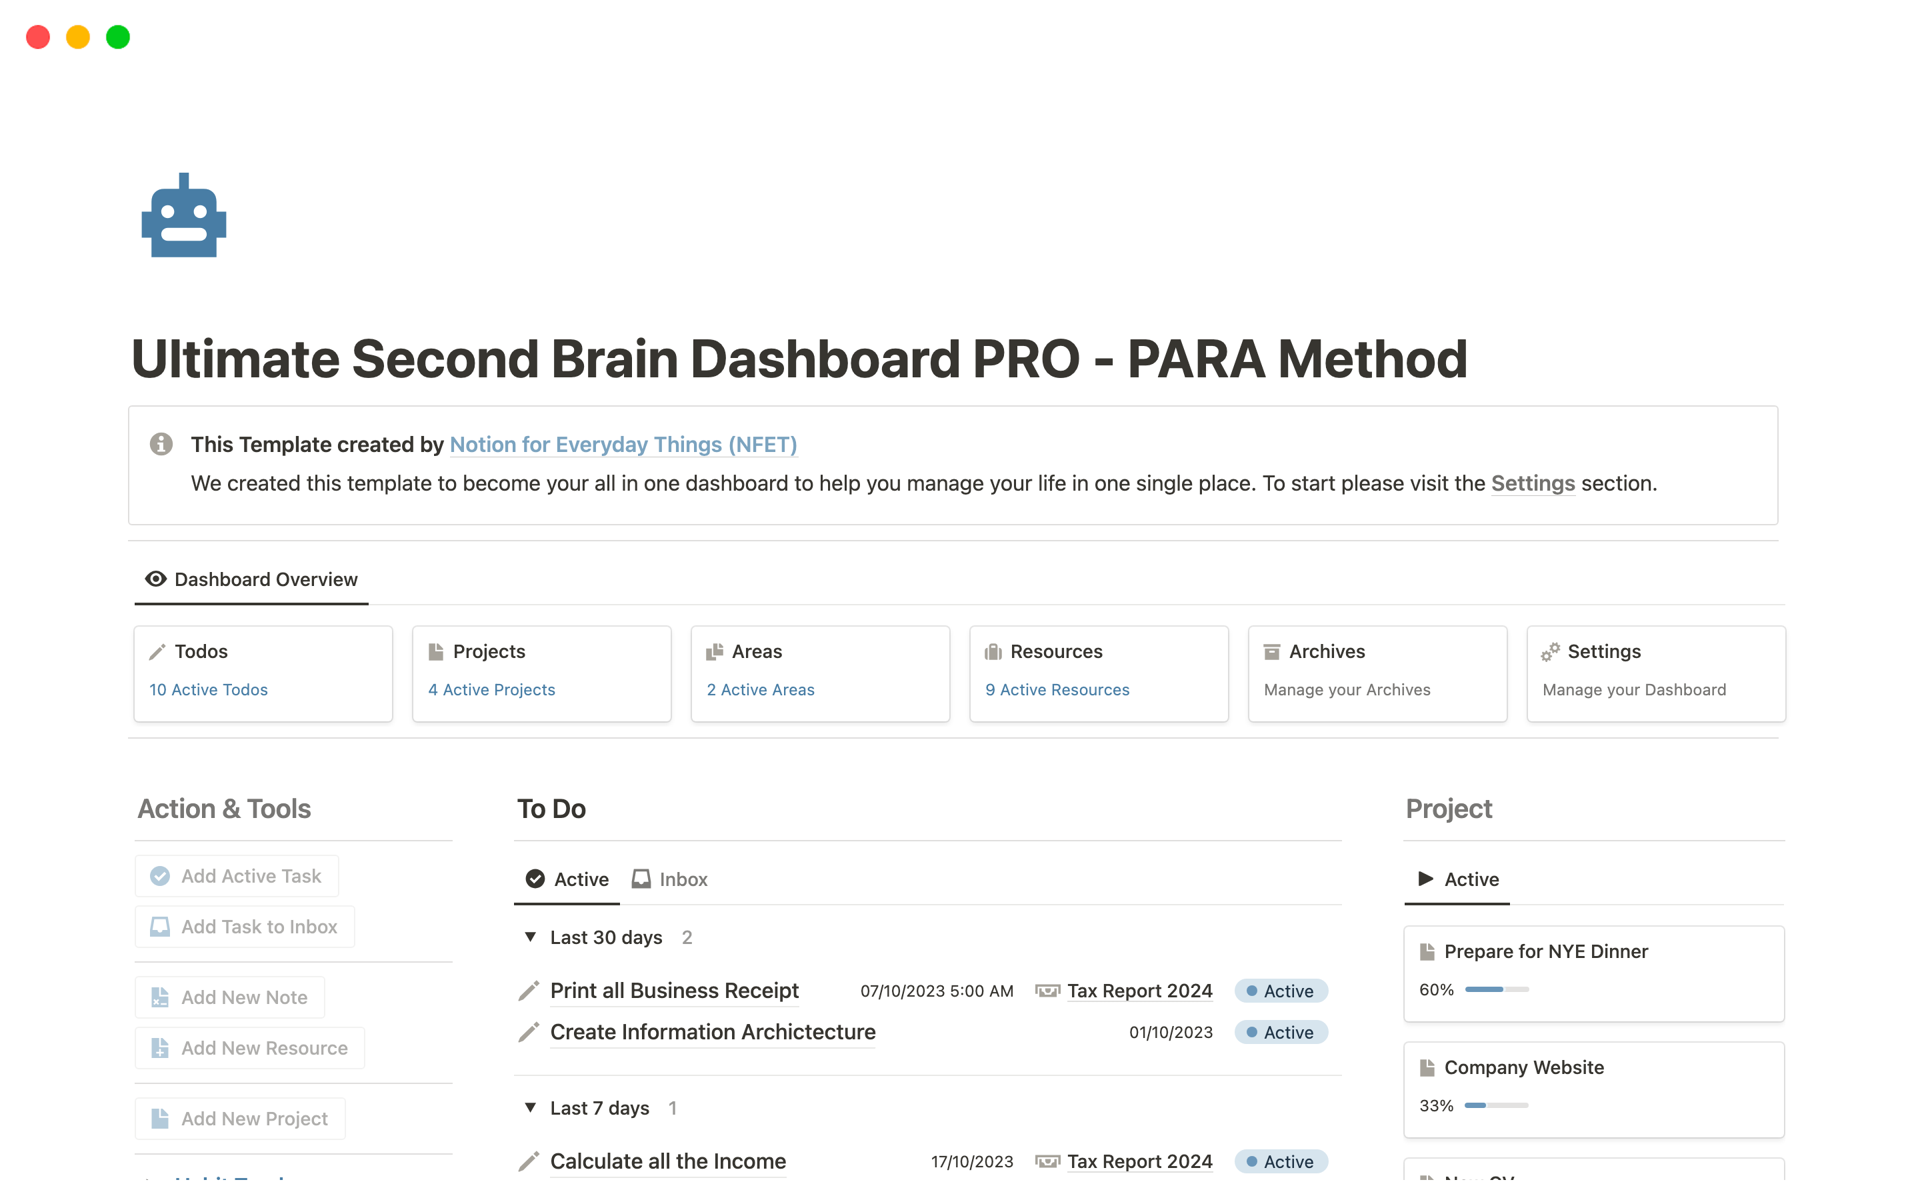 Uma prévia do modelo para Ultimate Second Brain Dashboard PRO - PARA Method